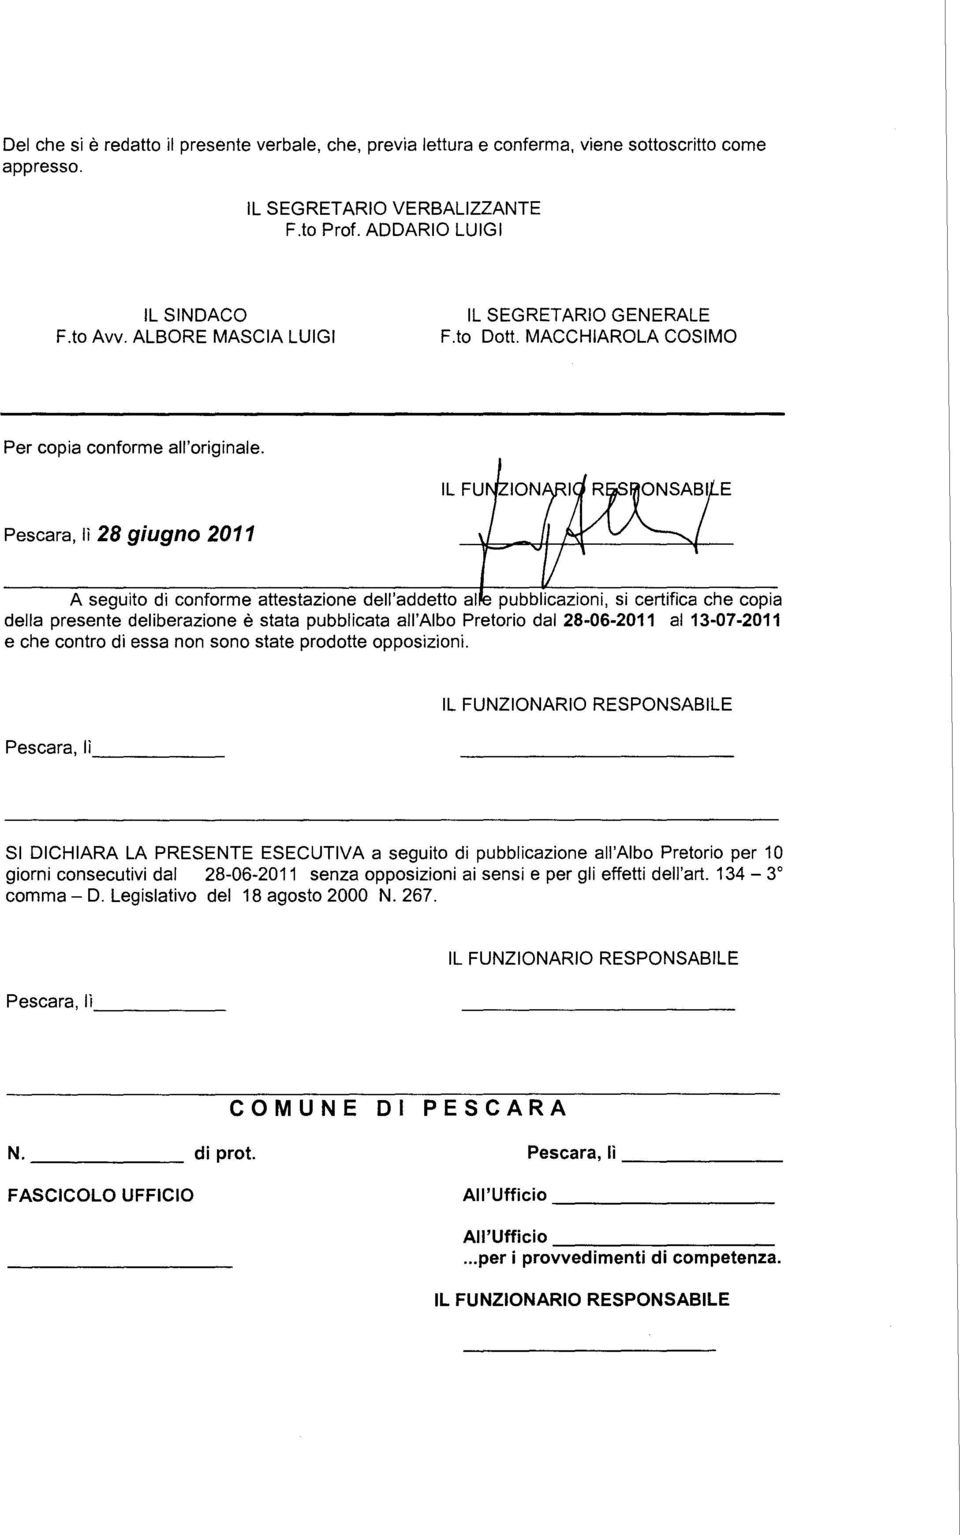 Pescara, lì 28 giugno 2011 A seguito di conforme attestazione dell'addetto al pubblicazioni, si certifica che copia della presente deliberazione è stata pubblicata all'albo Pretorio dal 28-06-2011 al